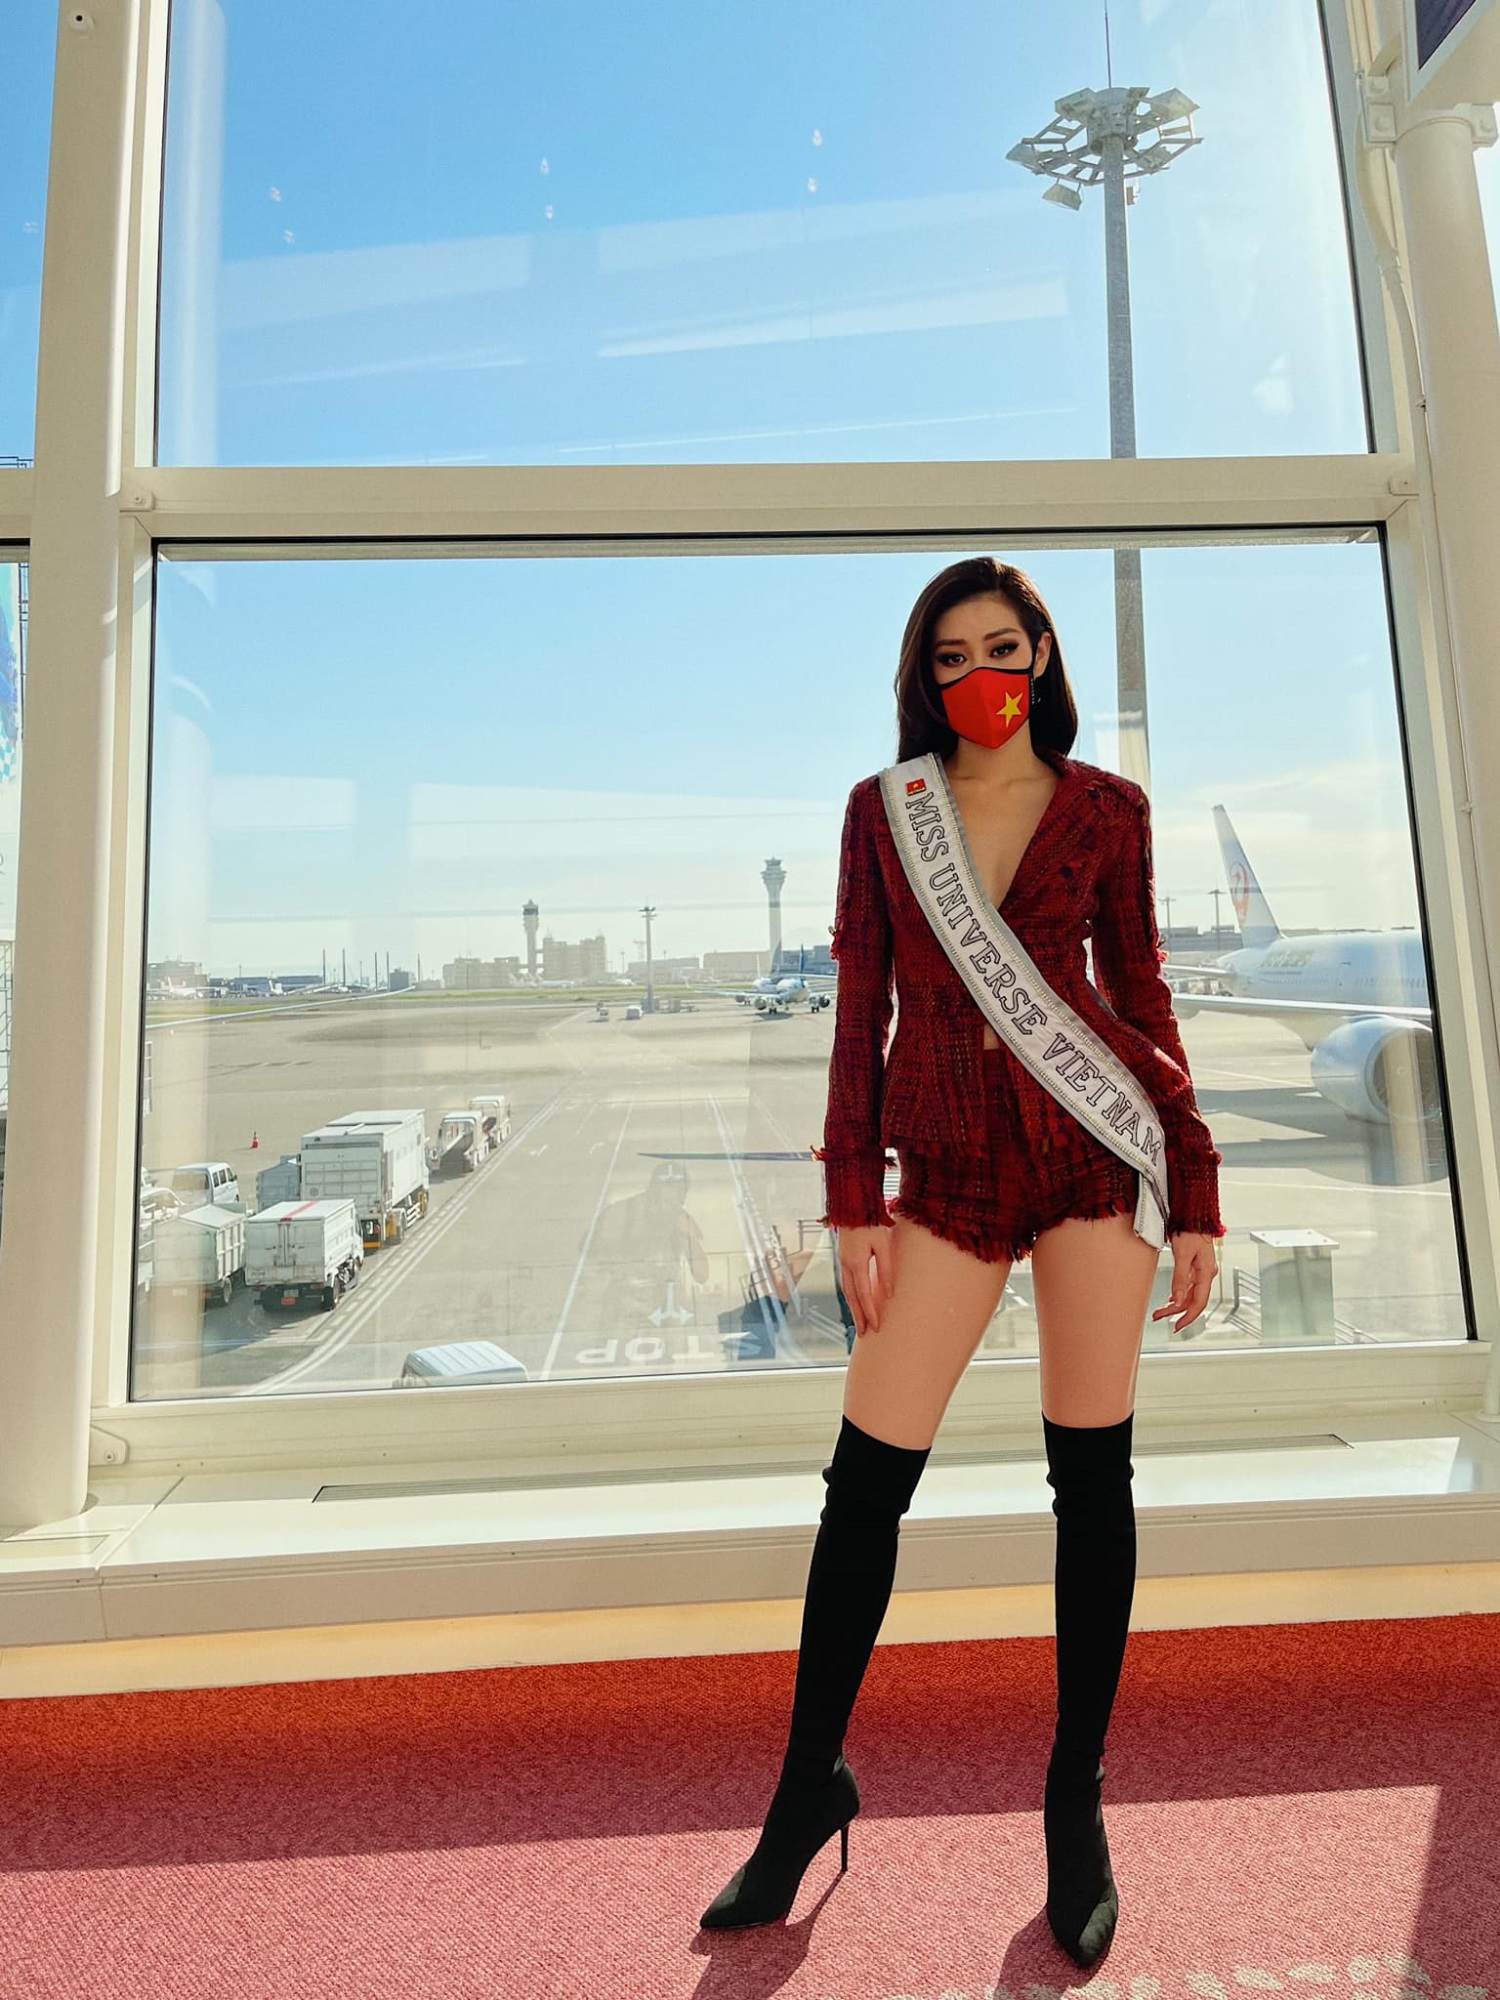 Hoa hậu Khánh Vân lên đường sang Mỹ thi Miss Universe, trang phục gây chú ý - Ảnh 2